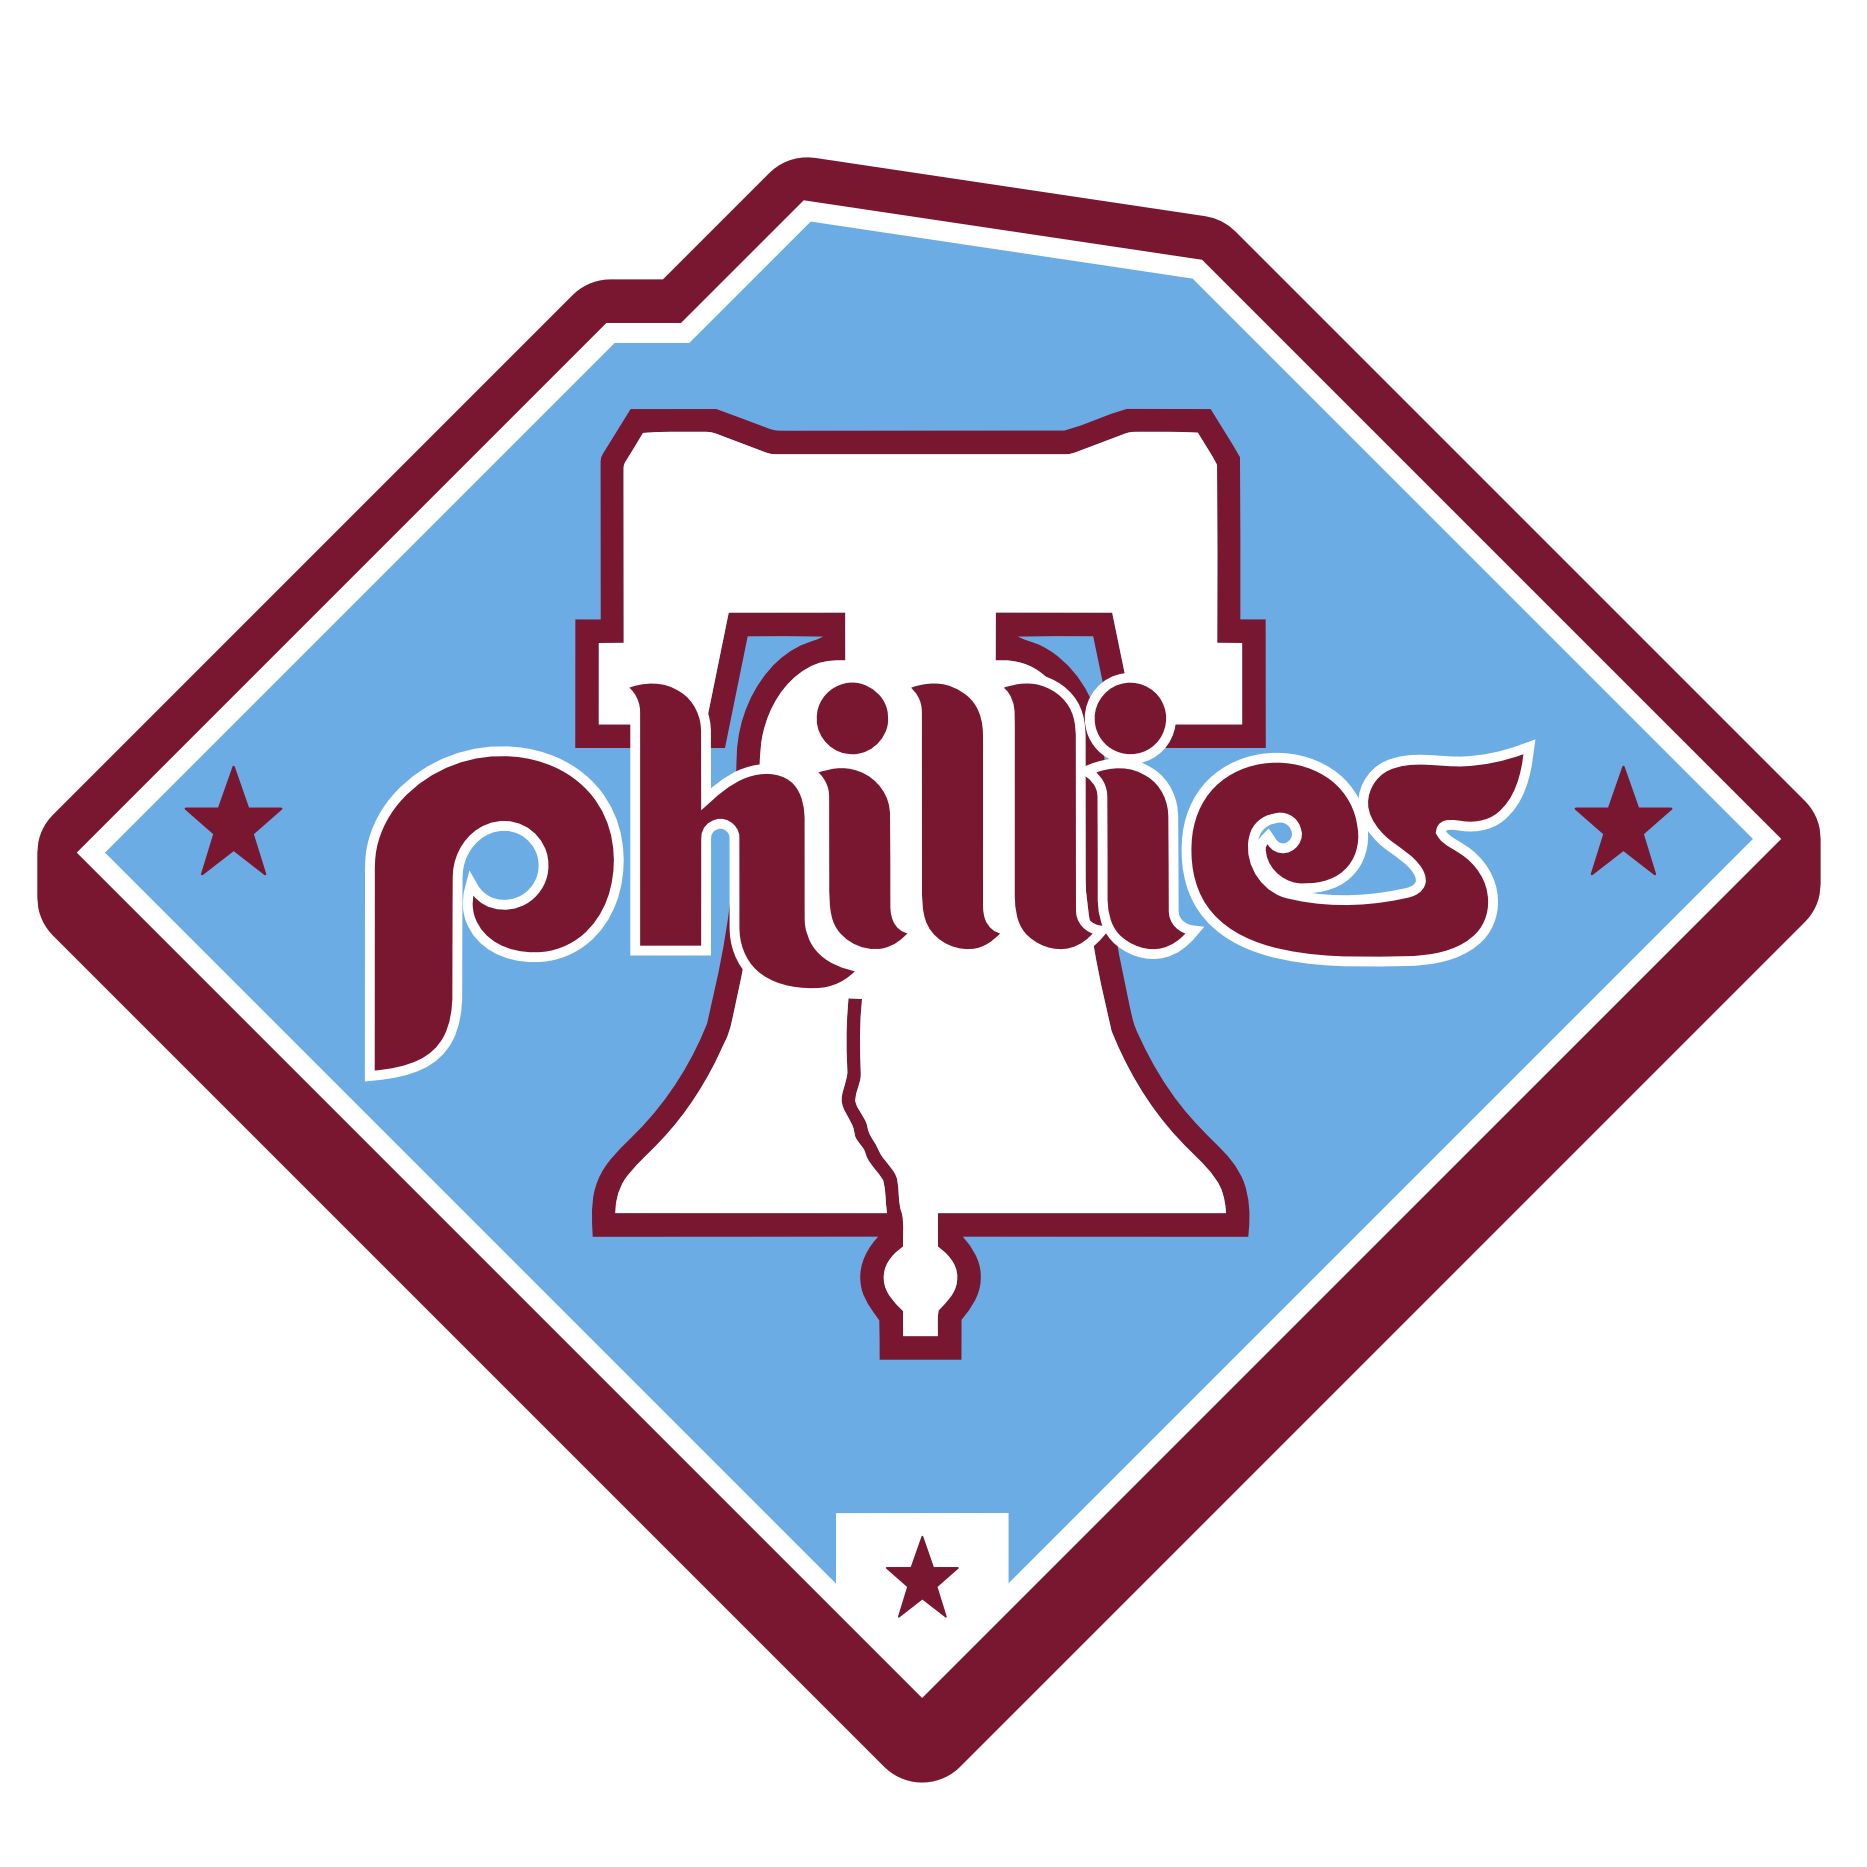 Phillies Logo PNG Photos